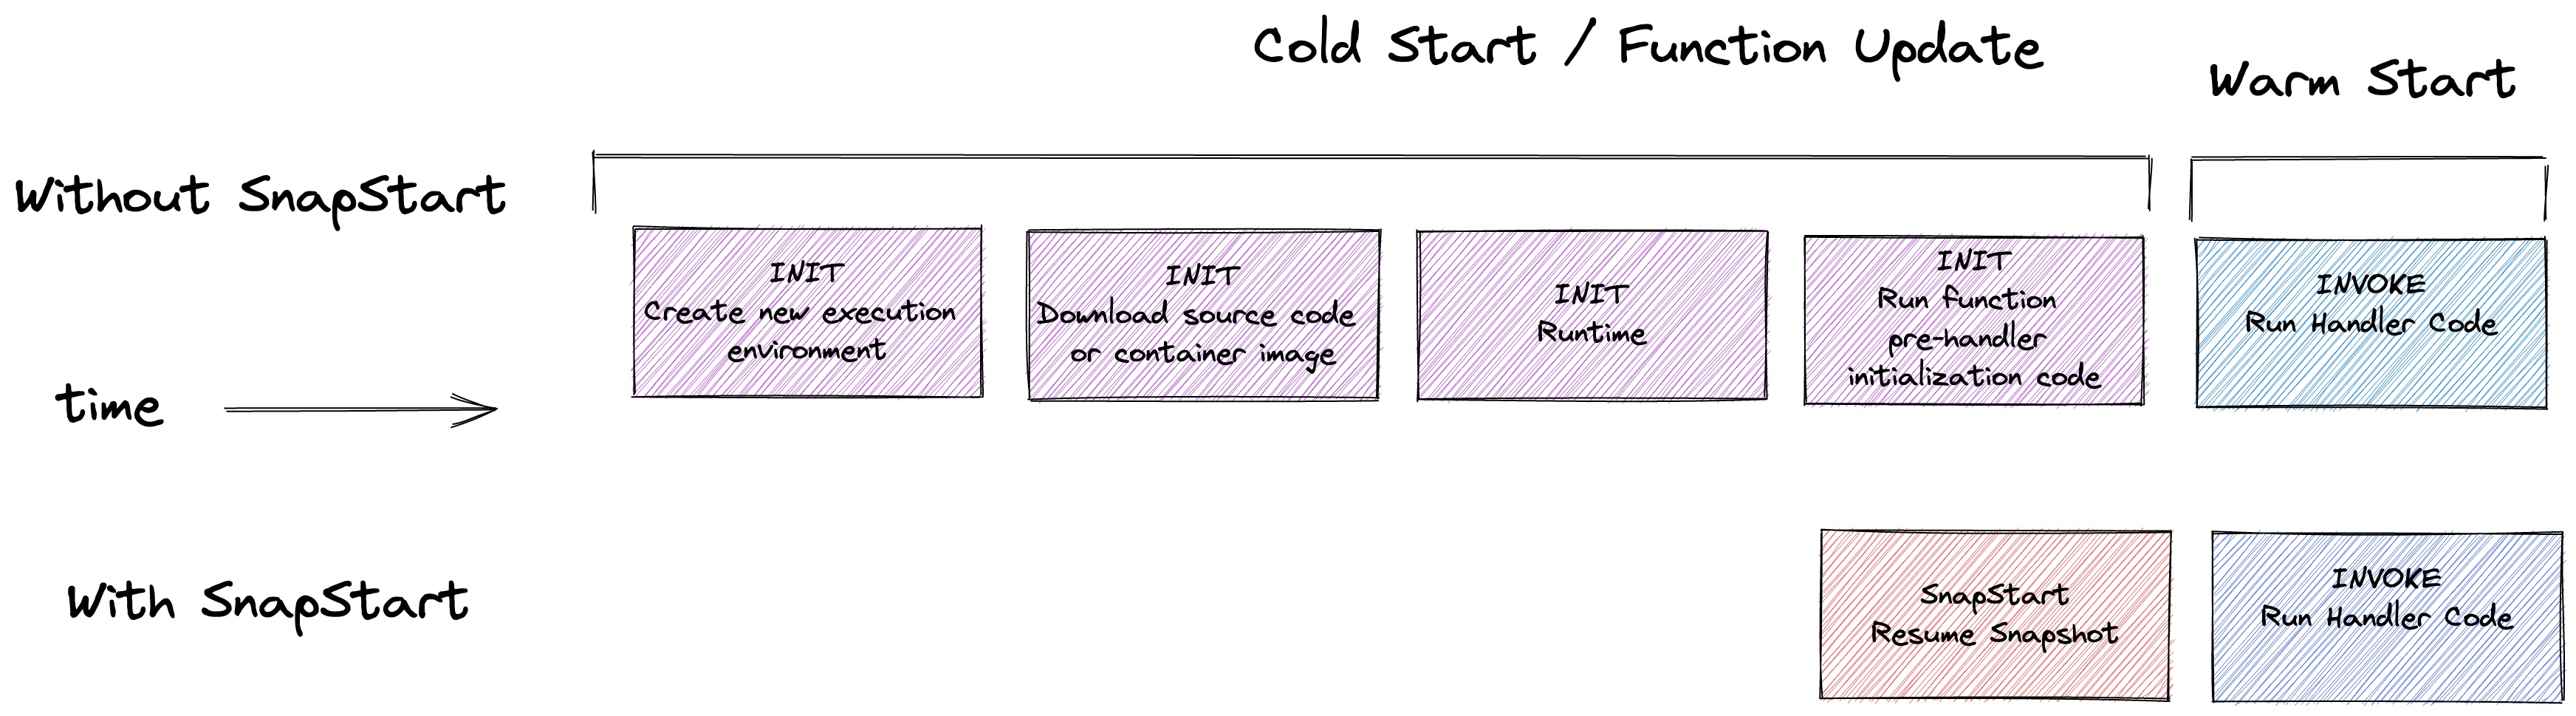 SnapStart vs Cold Start